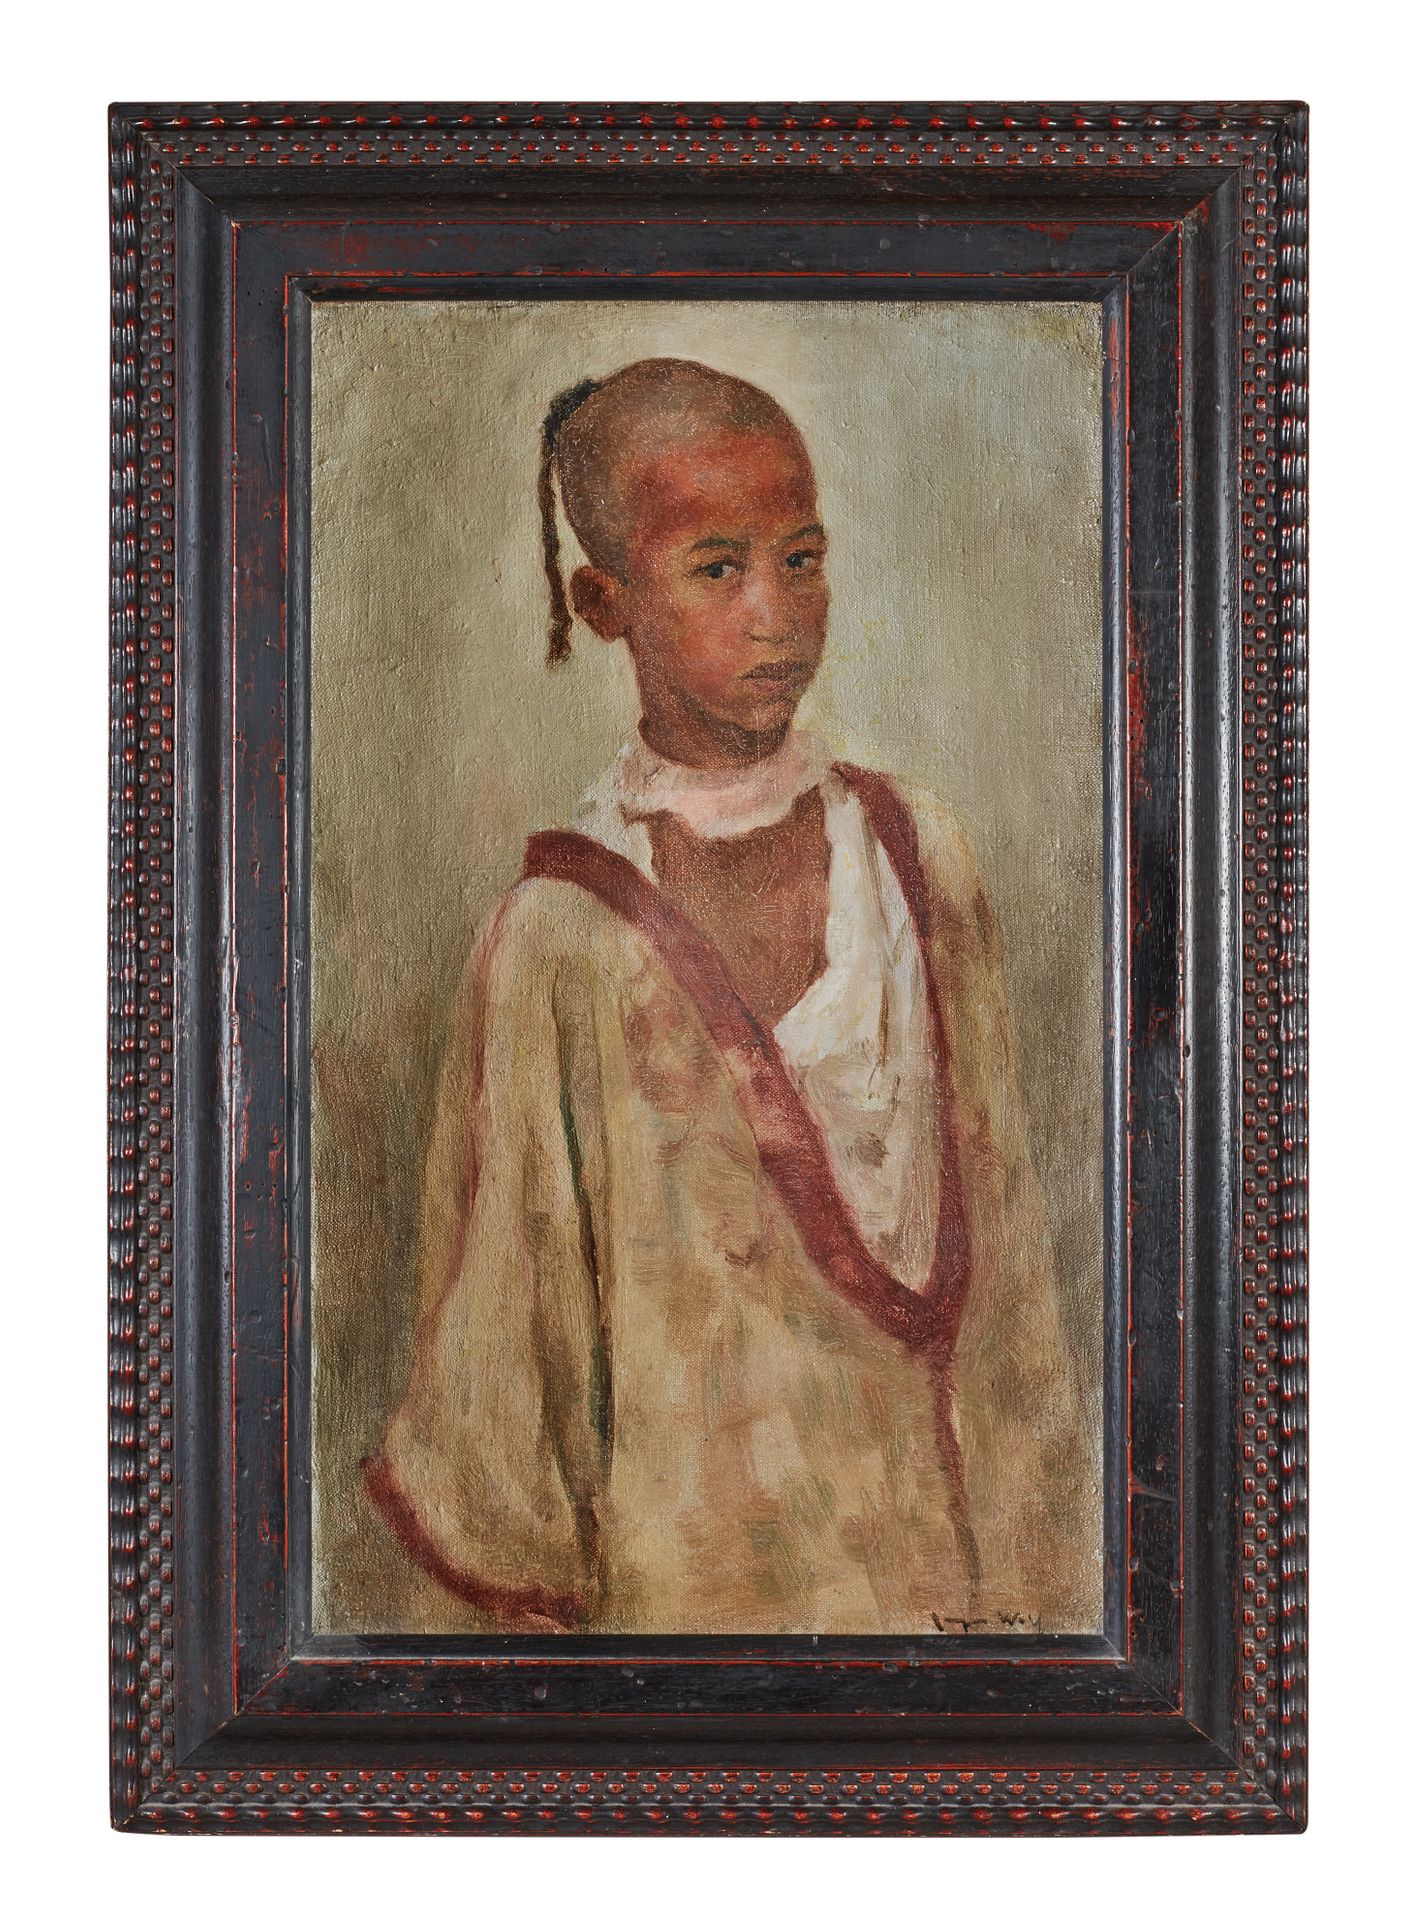 Null 弗朗西斯克-诺伊(1855-1942)

一个阿拉伯儿童的画像

右上角有纸板签名。

装在带有东方主义图案的雕花木框中。

高度28 - 宽度23厘&hellip;